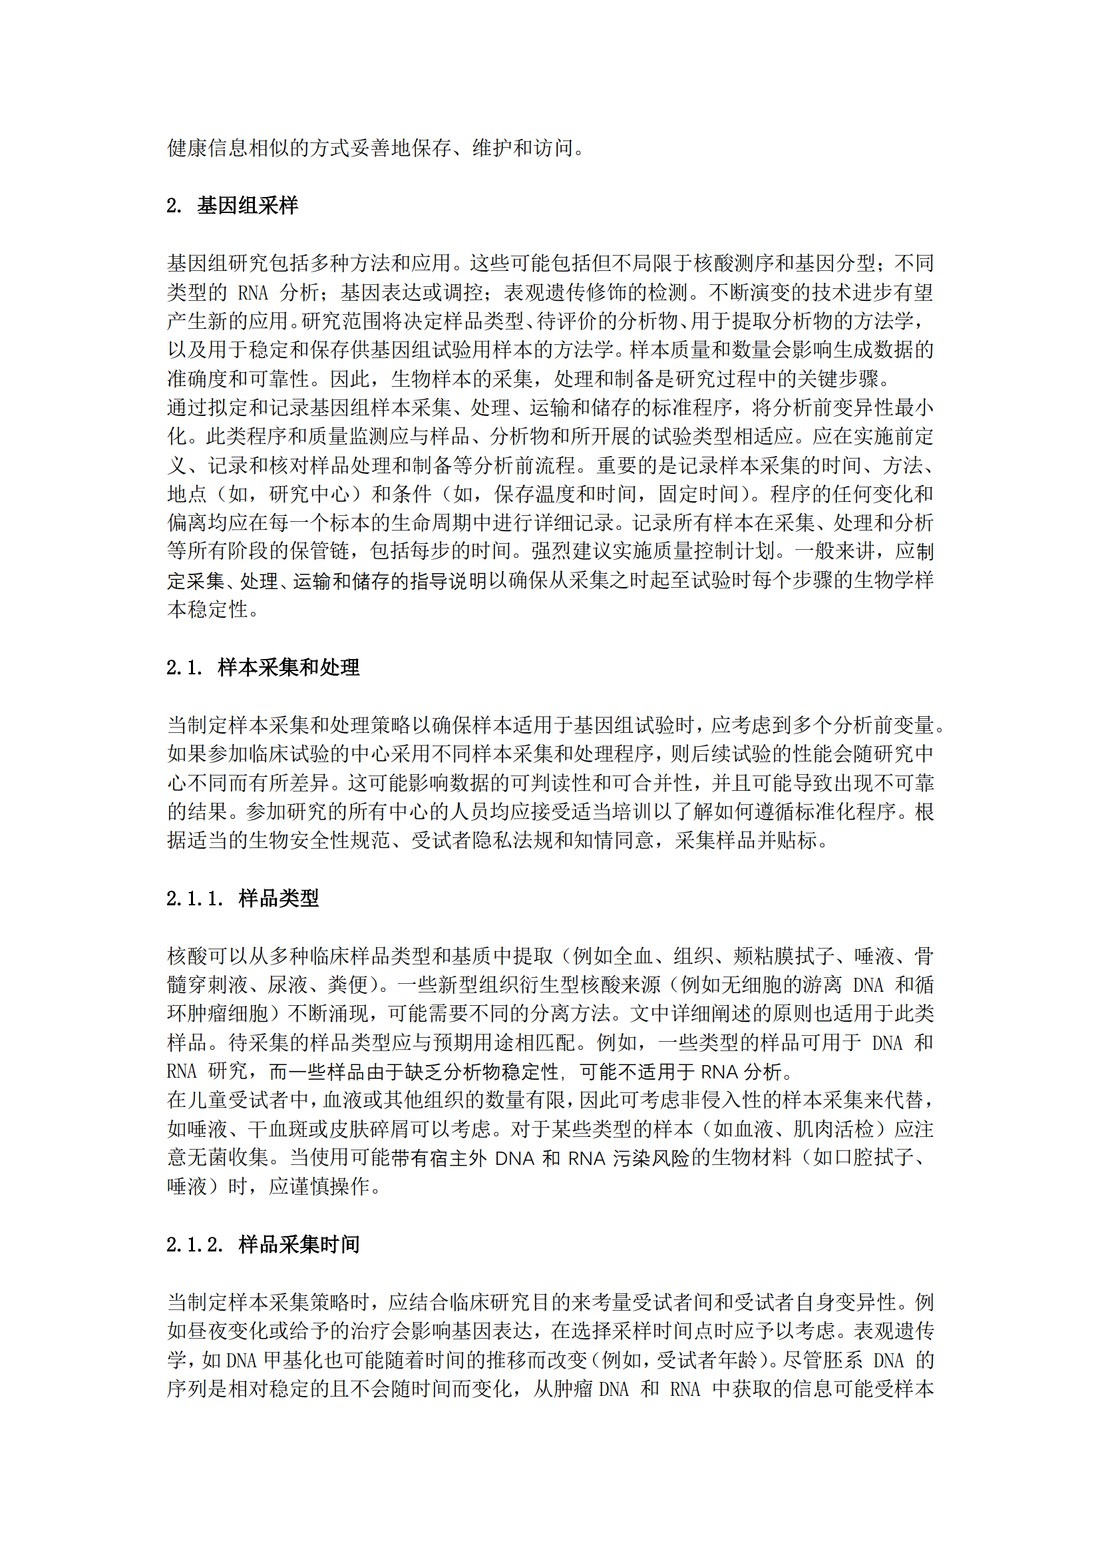 E18：基因组采样和基因组数据管理指导原则（中文翻译公开征求意见稿）_05.jpg